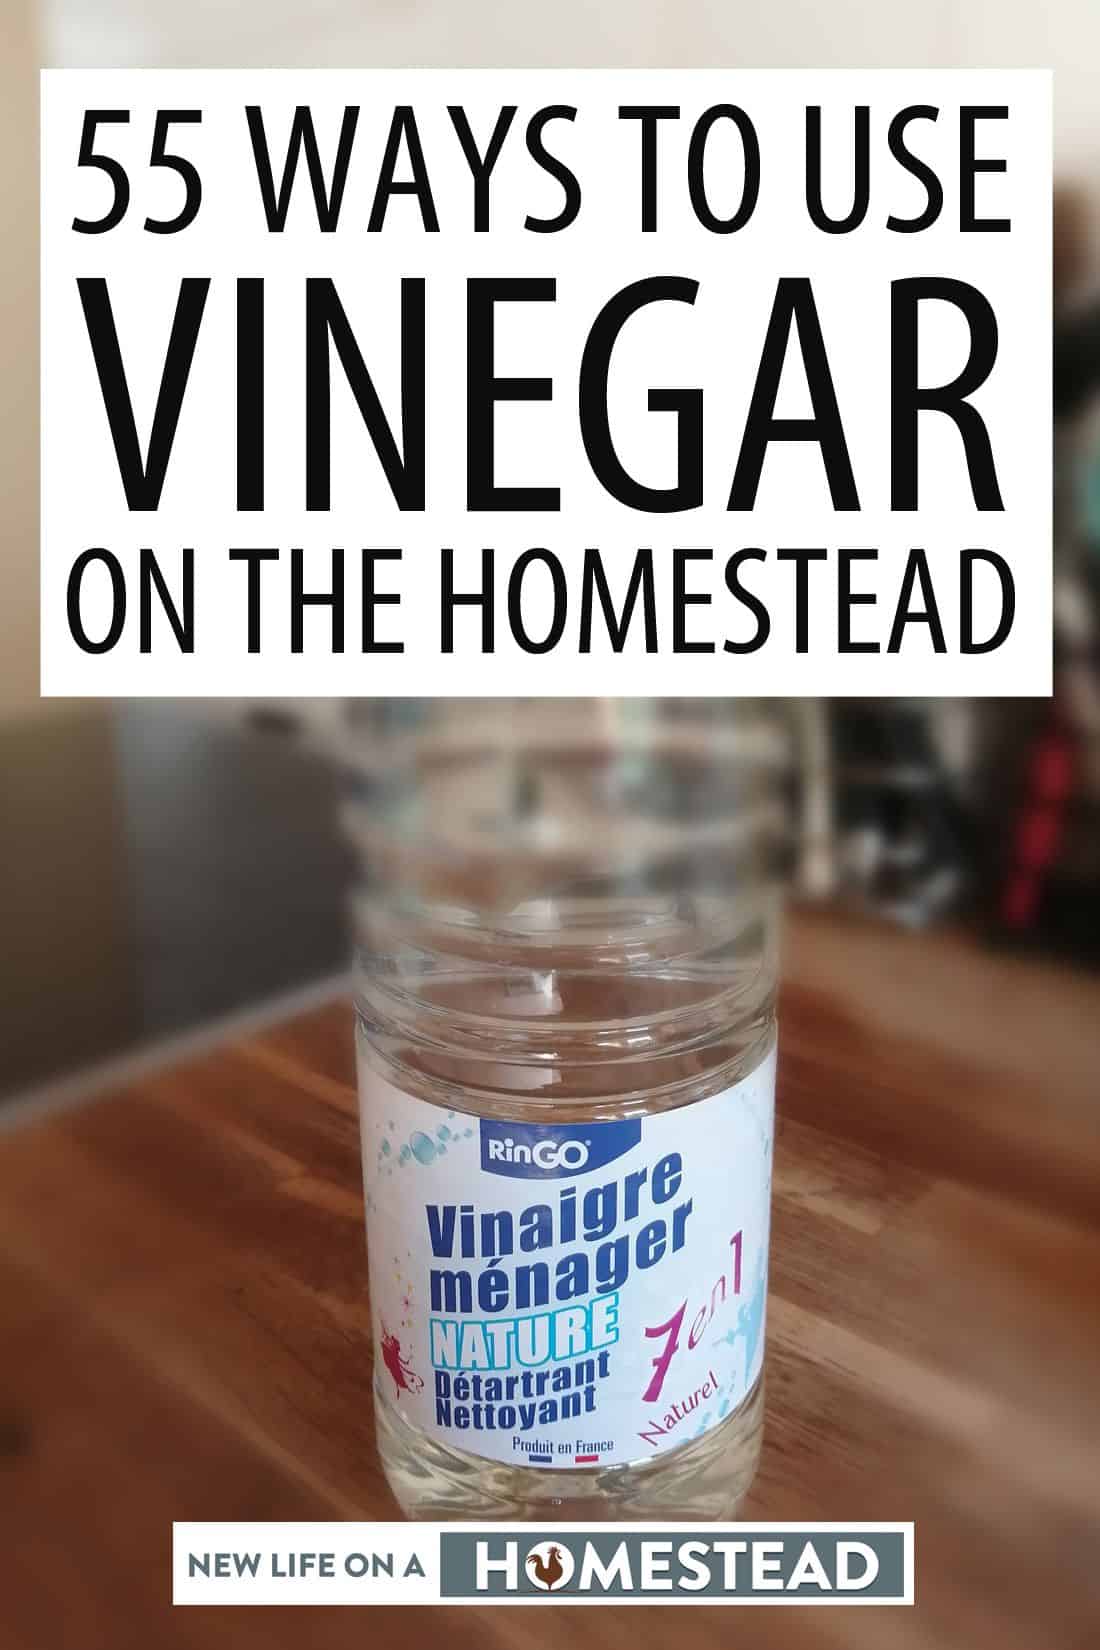 vinegar homestead uses pinterest